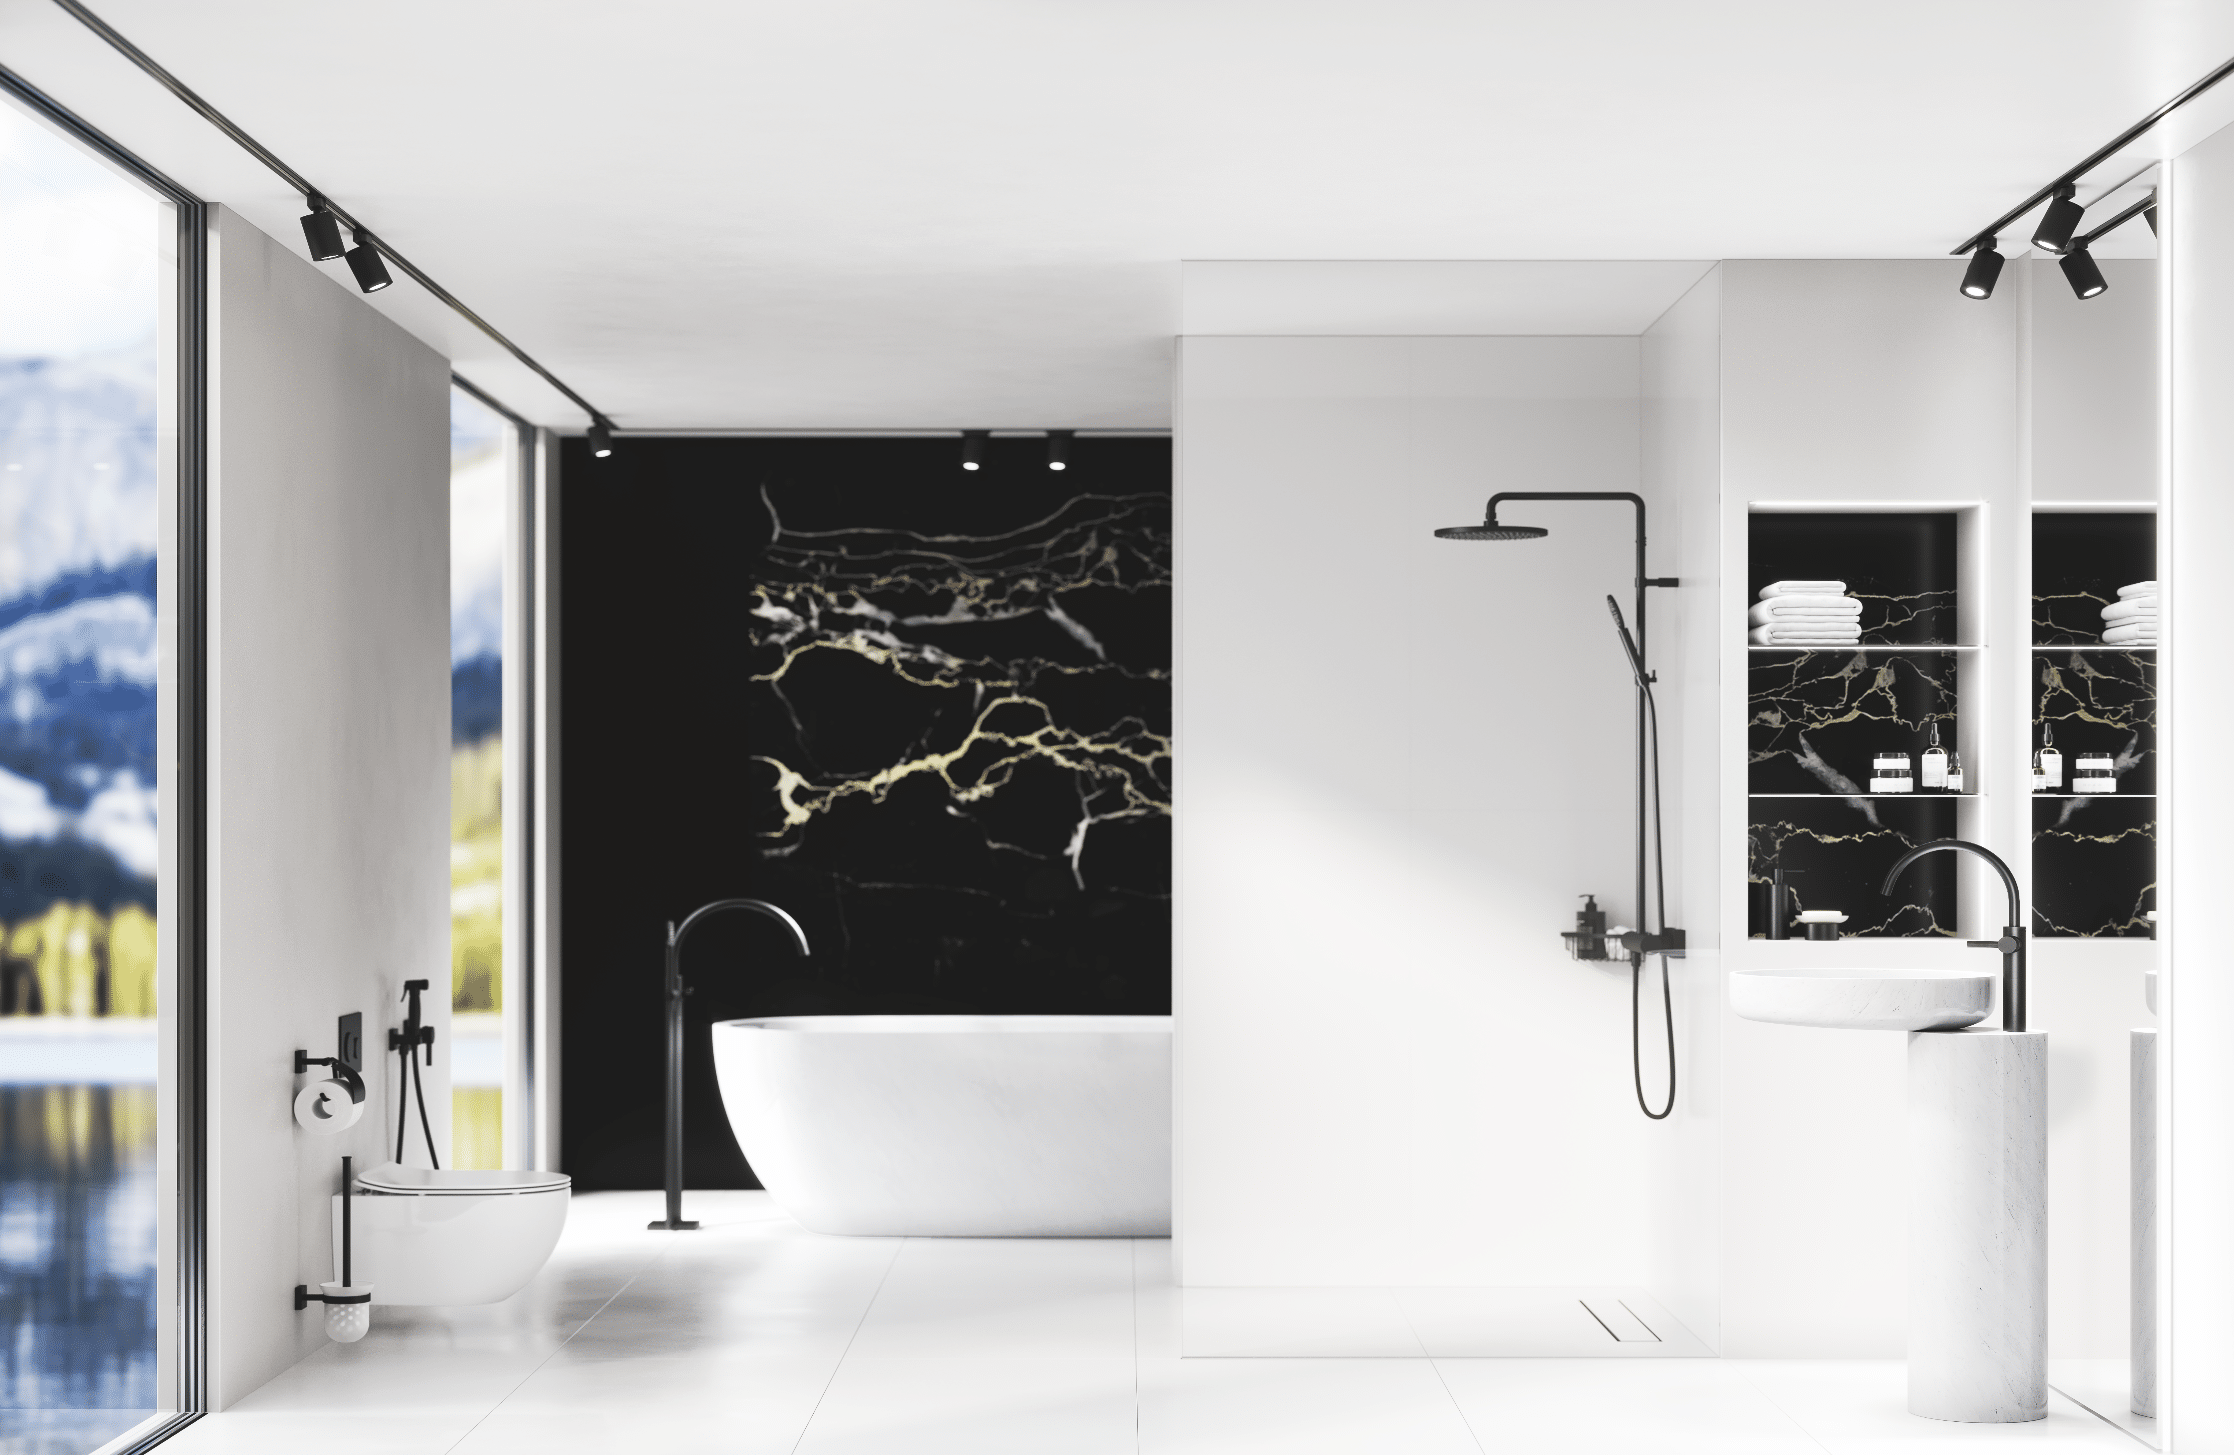 Jörgers jüngster Badentwurf mit „Charleston Square“ in Schwarz matt verbindet aktuelle und sehr dekorative Badezimmertrends mit klassischer Moderne und schafft so ein Universum von zeitloser Eleganz und purer Form.